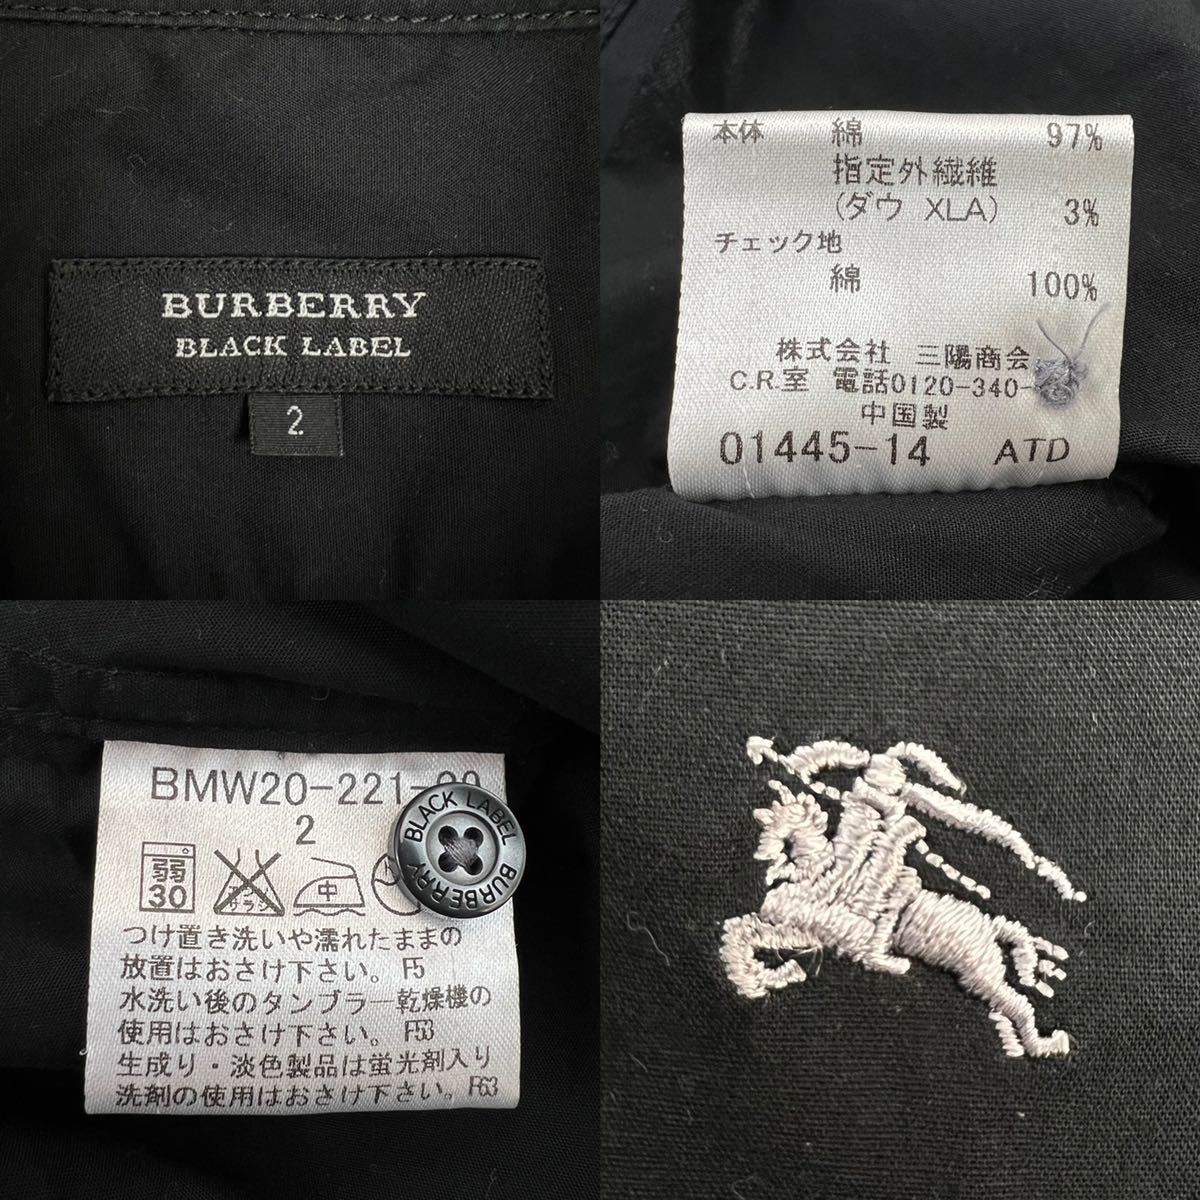  превосходный товар BURBERRY BLACK LABEL Burberry Black Label рубашка с коротким рукавом размер 2/M чёрный подкладка noba в клетку переключатель шланг вышивка редкий весна лето 230314